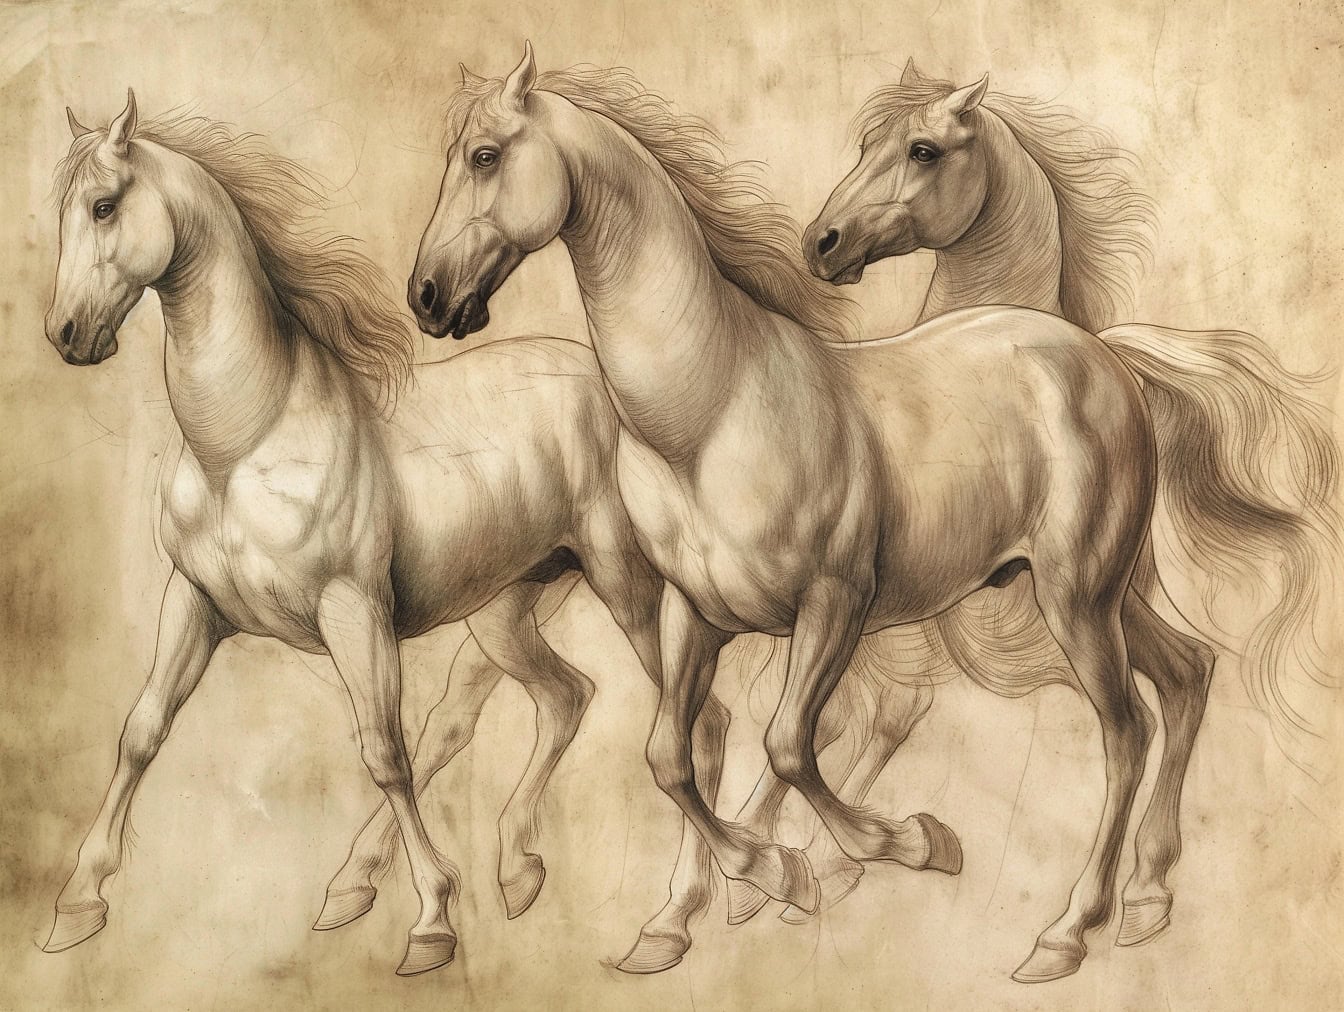 Ručno crtanje tri konja s dugom grivom u galopu, skica na starom izblijedjelom žućkastom papiru